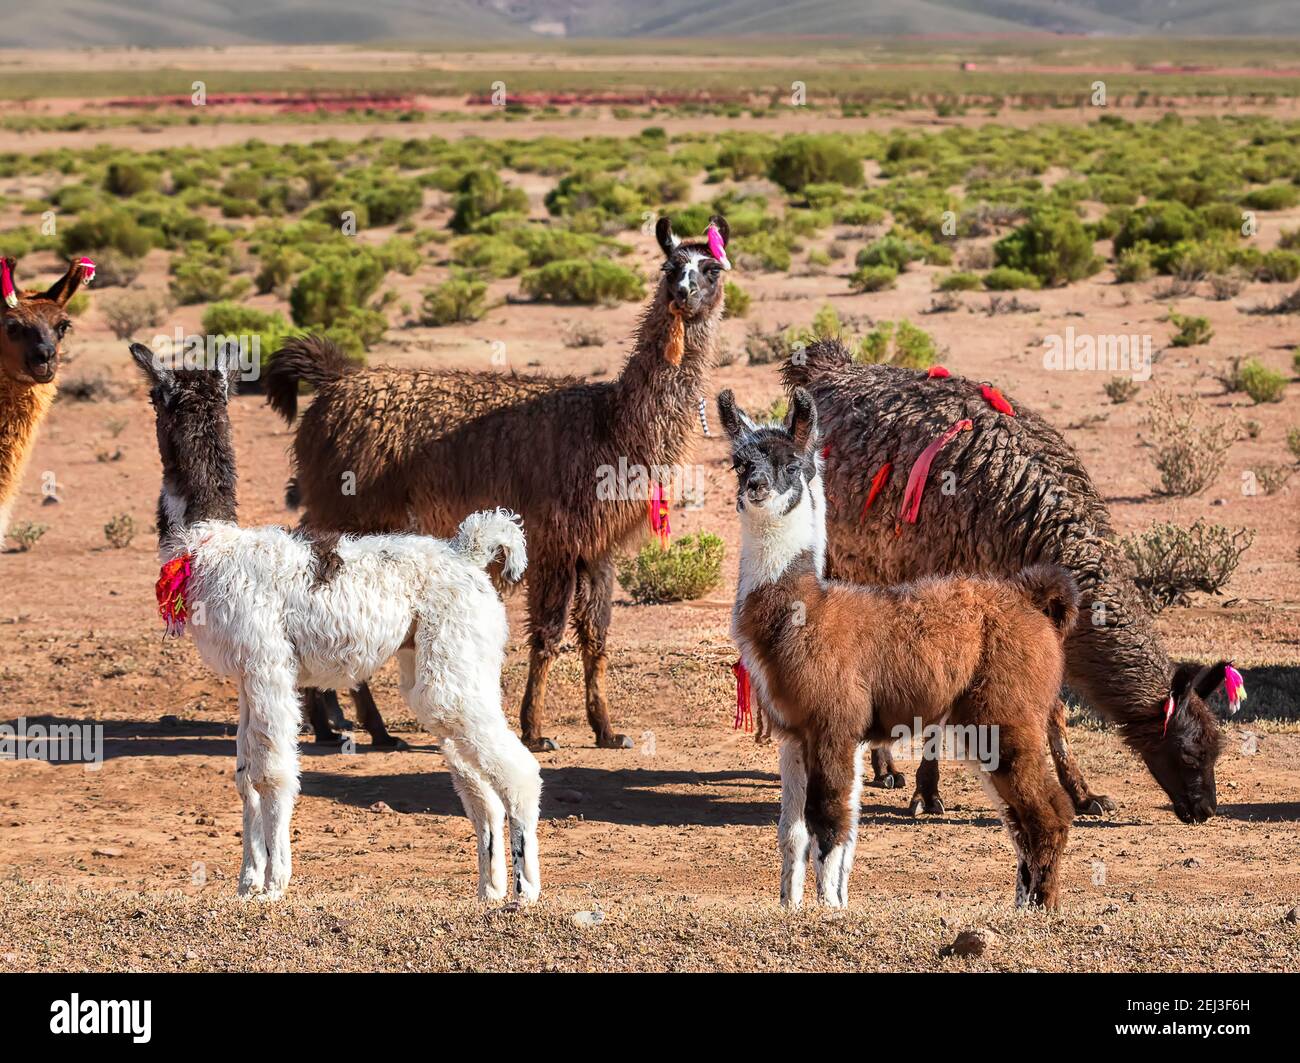 Troupeau de Llamas. Paysage désertique d'automne dans l'Altiplano bolivien. Andes, Amérique du Sud Banque D'Images